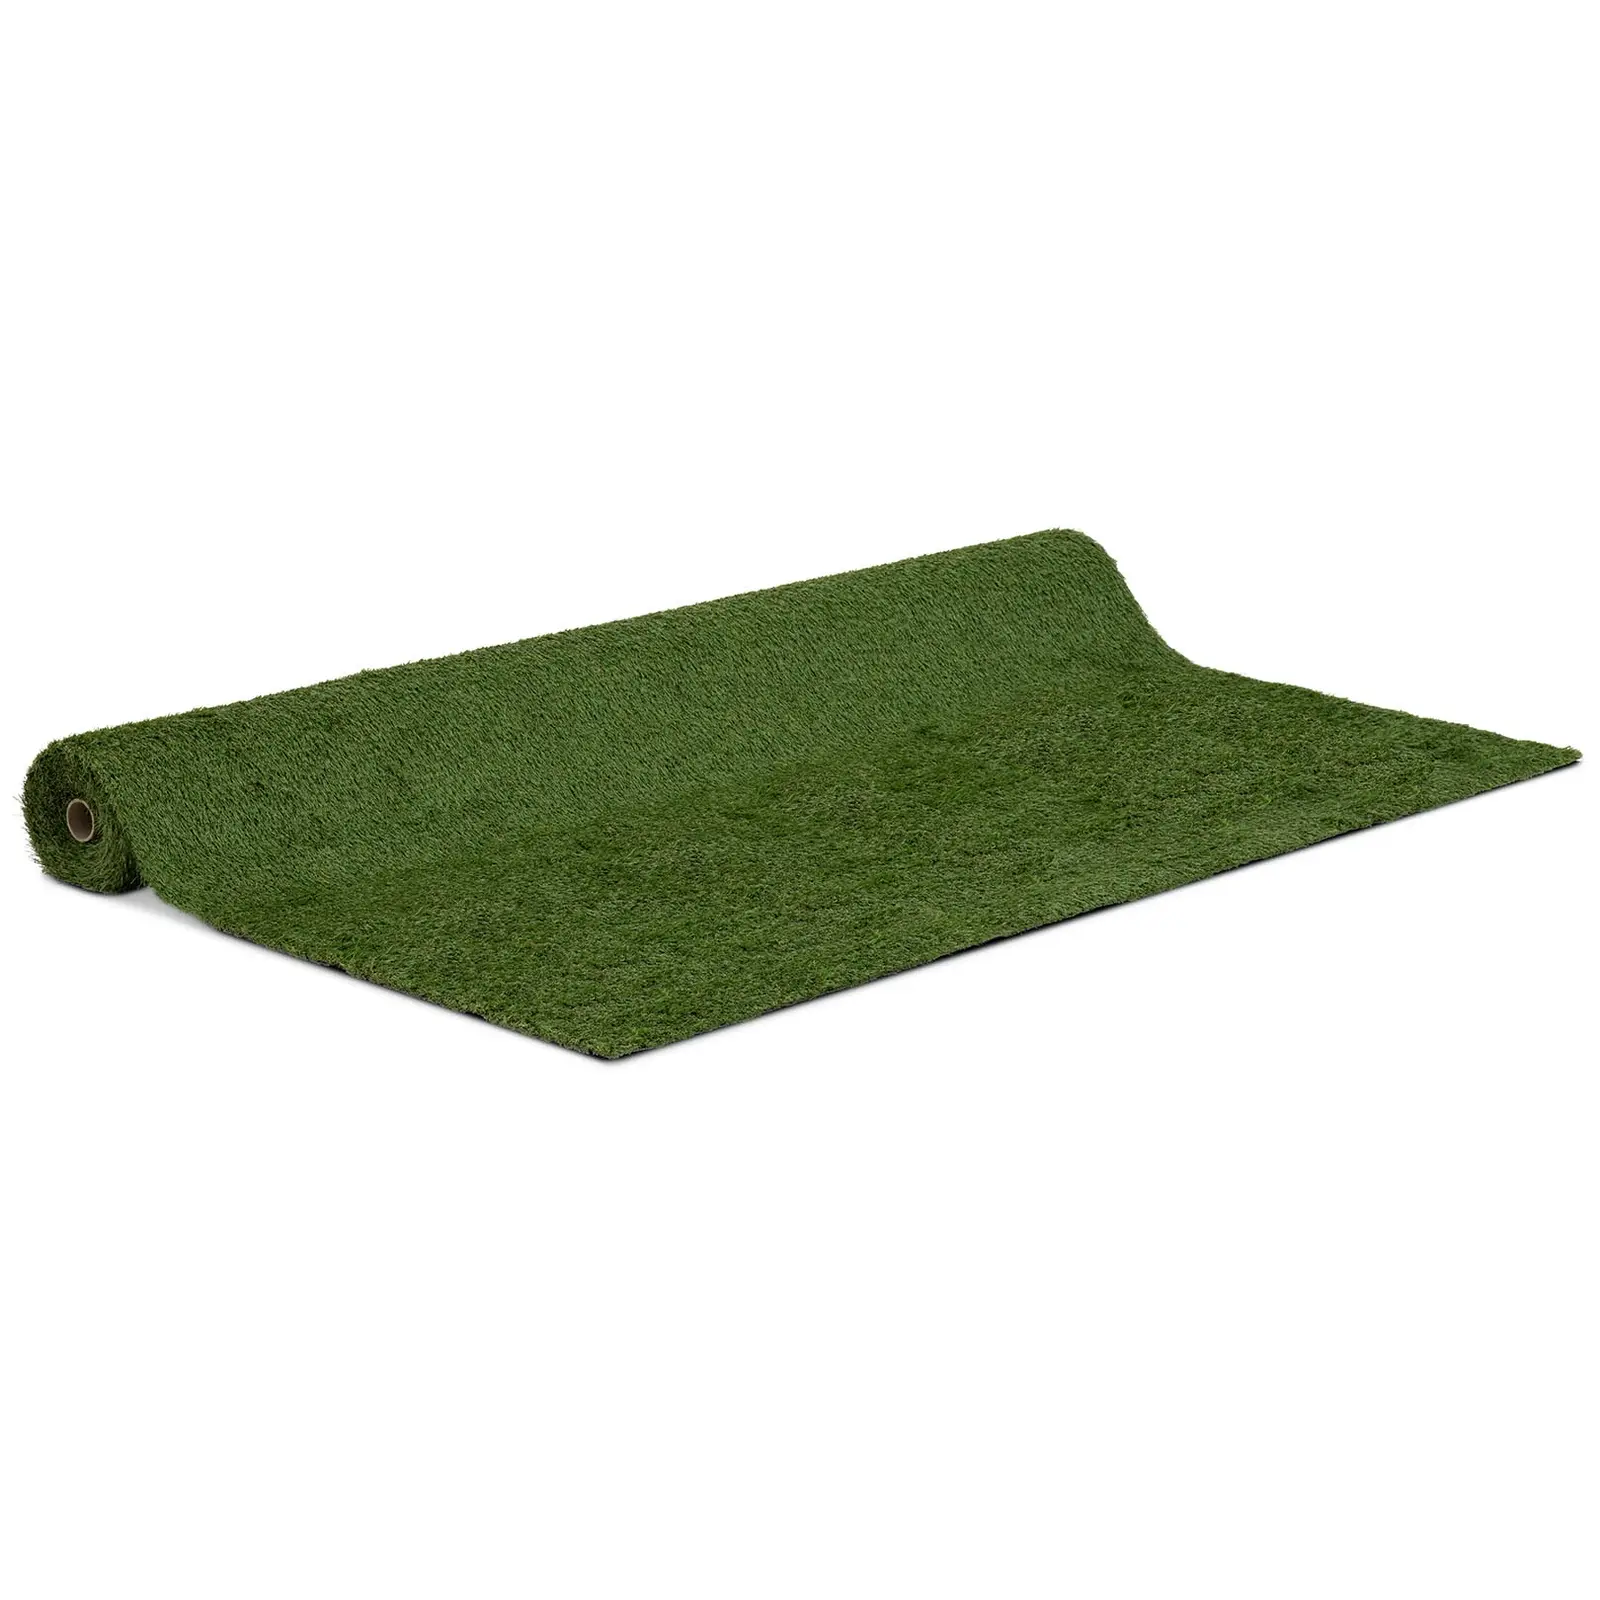 Umělý trávník - 505 x 200 cm - výška: 30 mm - hustota stehů: 14/10 cm - odolný proti UV záření